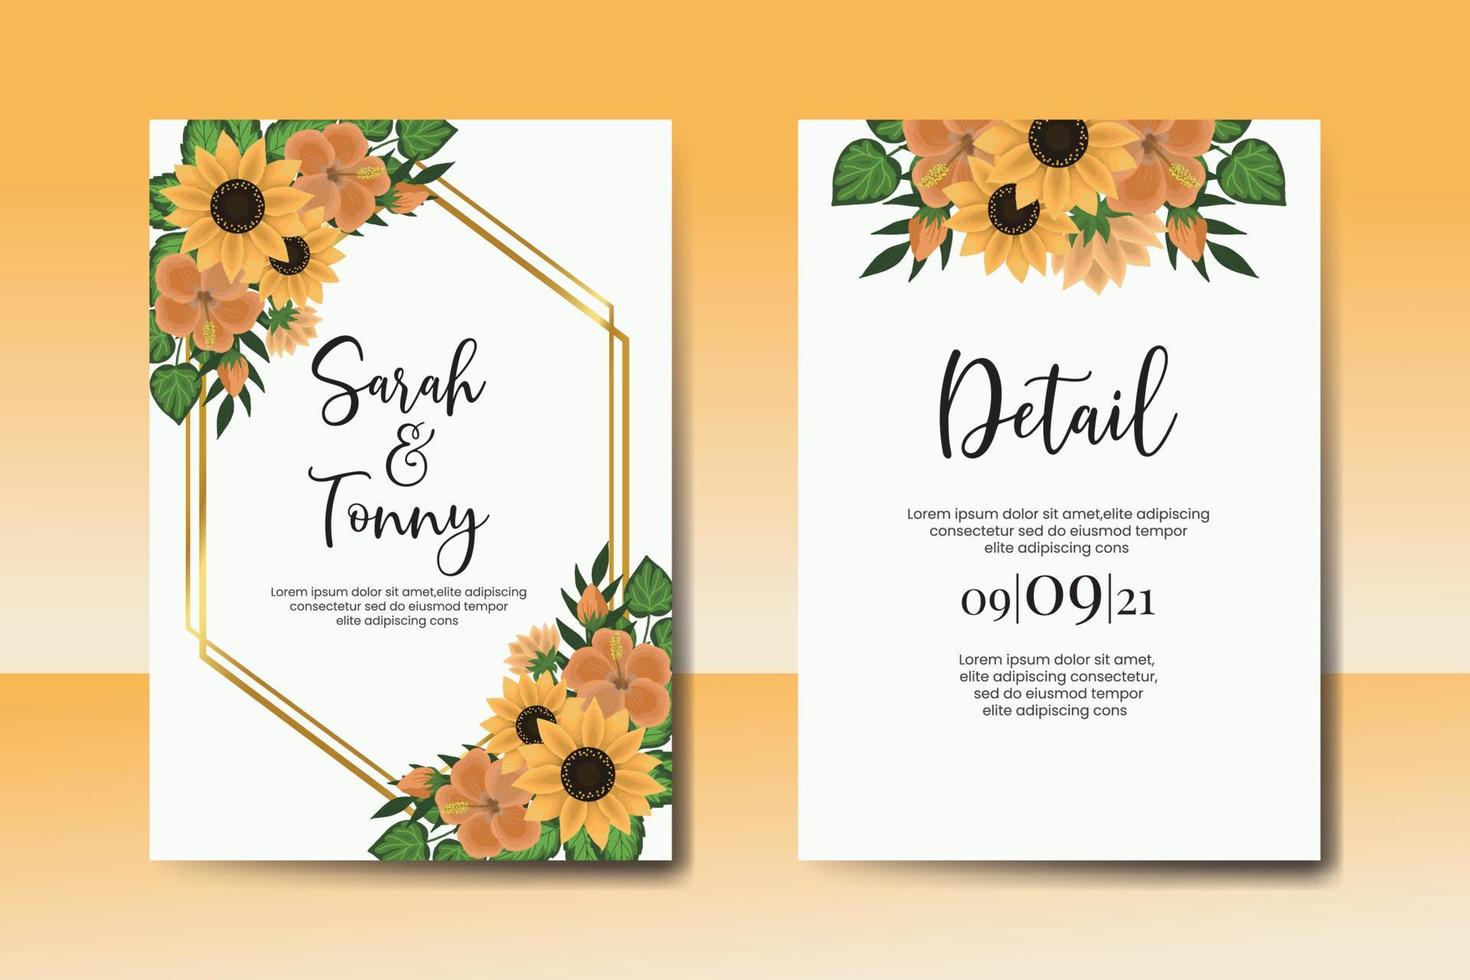 Boda invitación marco colocar, floral acuarela digital mano dibujado girasol diseño invitación tarjeta modelo vector